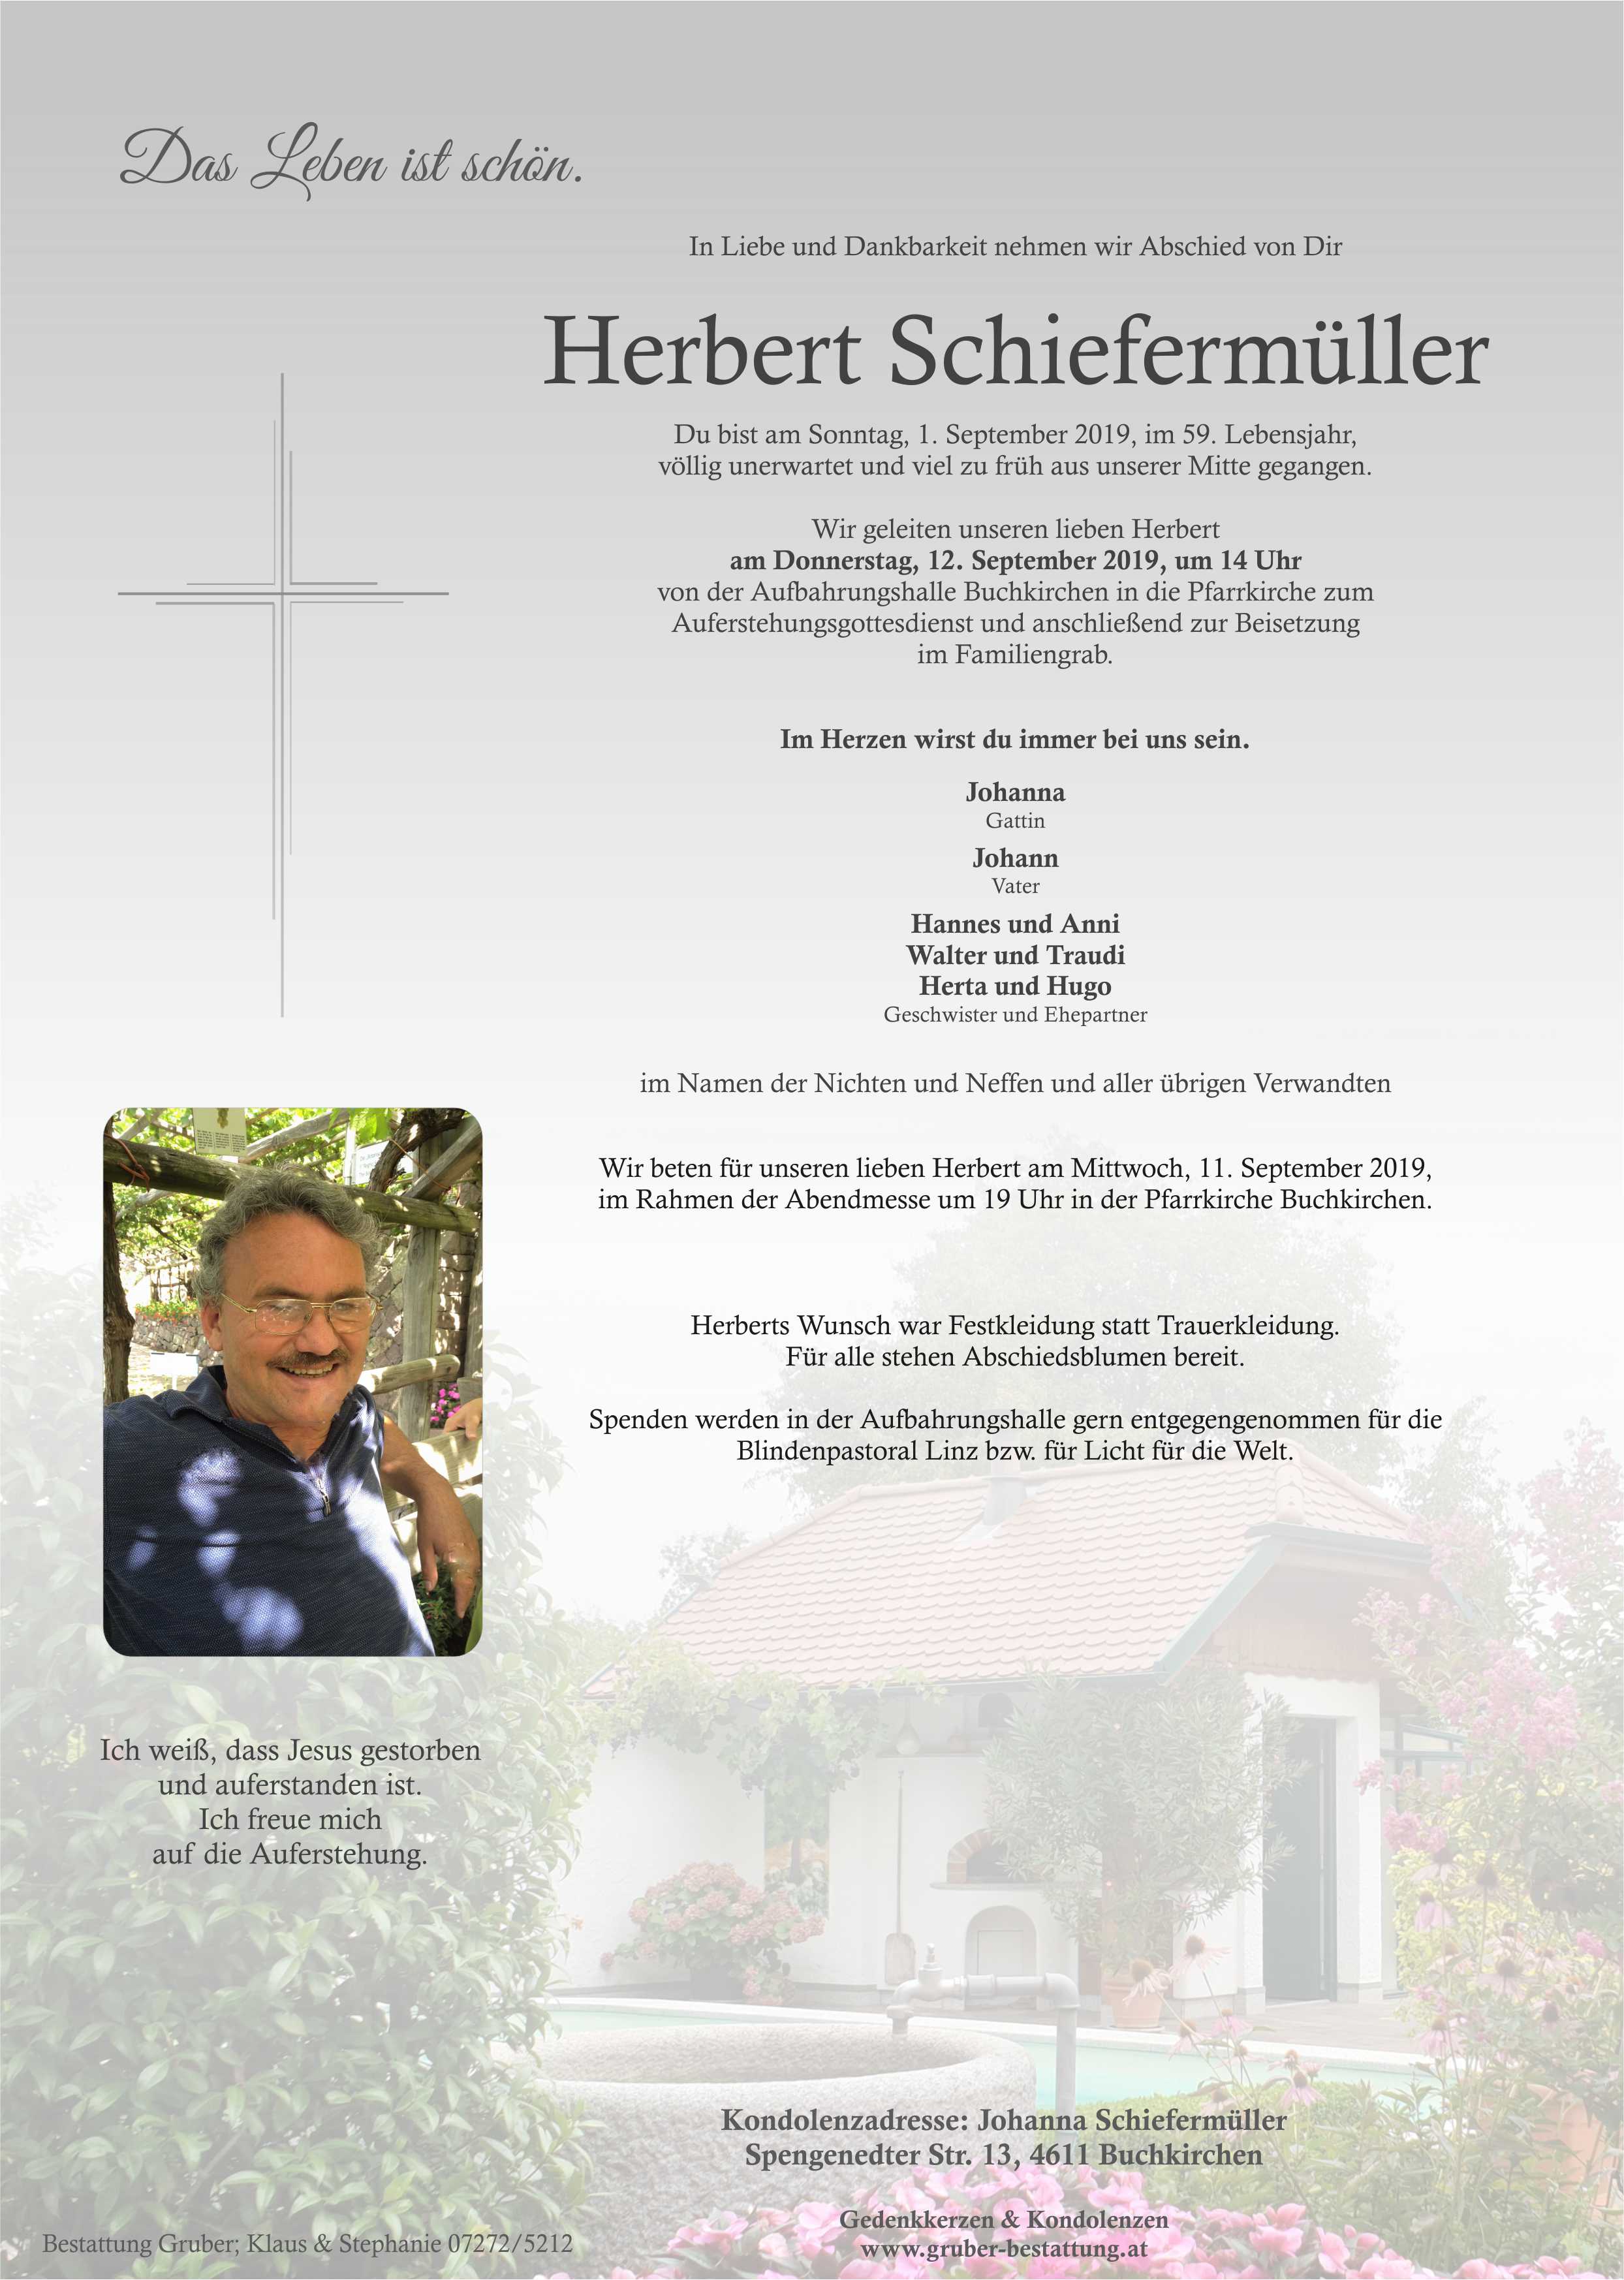 Herbert Schiefermüller (Buchkirchen)